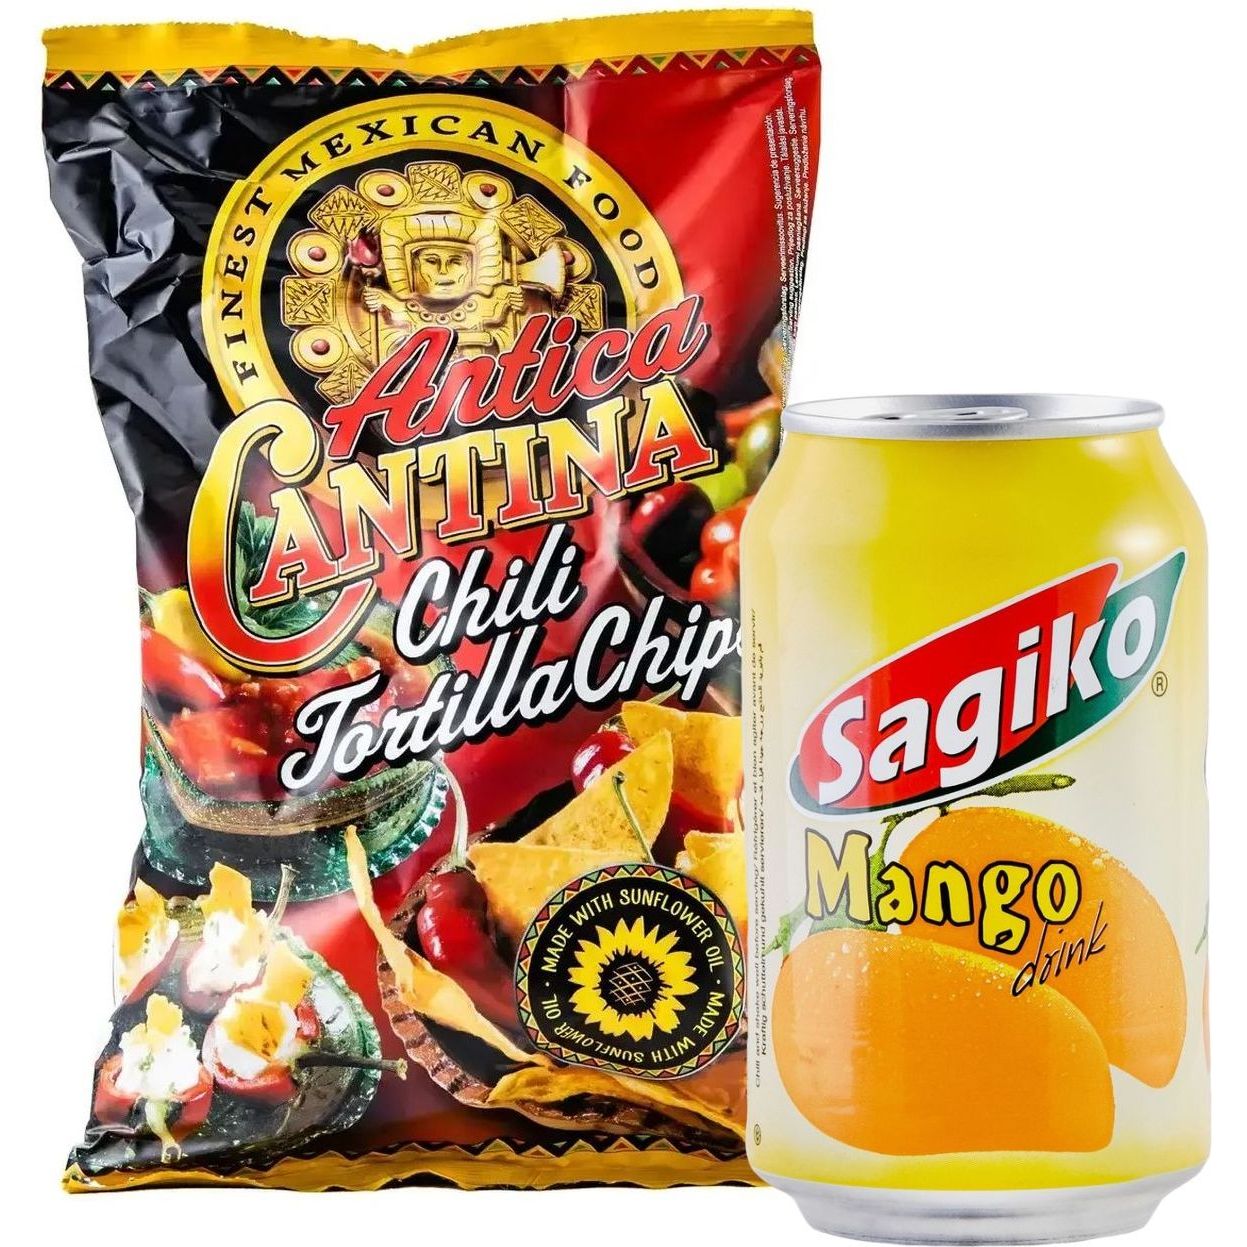 Набор: кукурузные чипсы Antica Cantina Начос Чили 200 г + напиток Sagiko Mango drink Манго 320 мл - фото 1